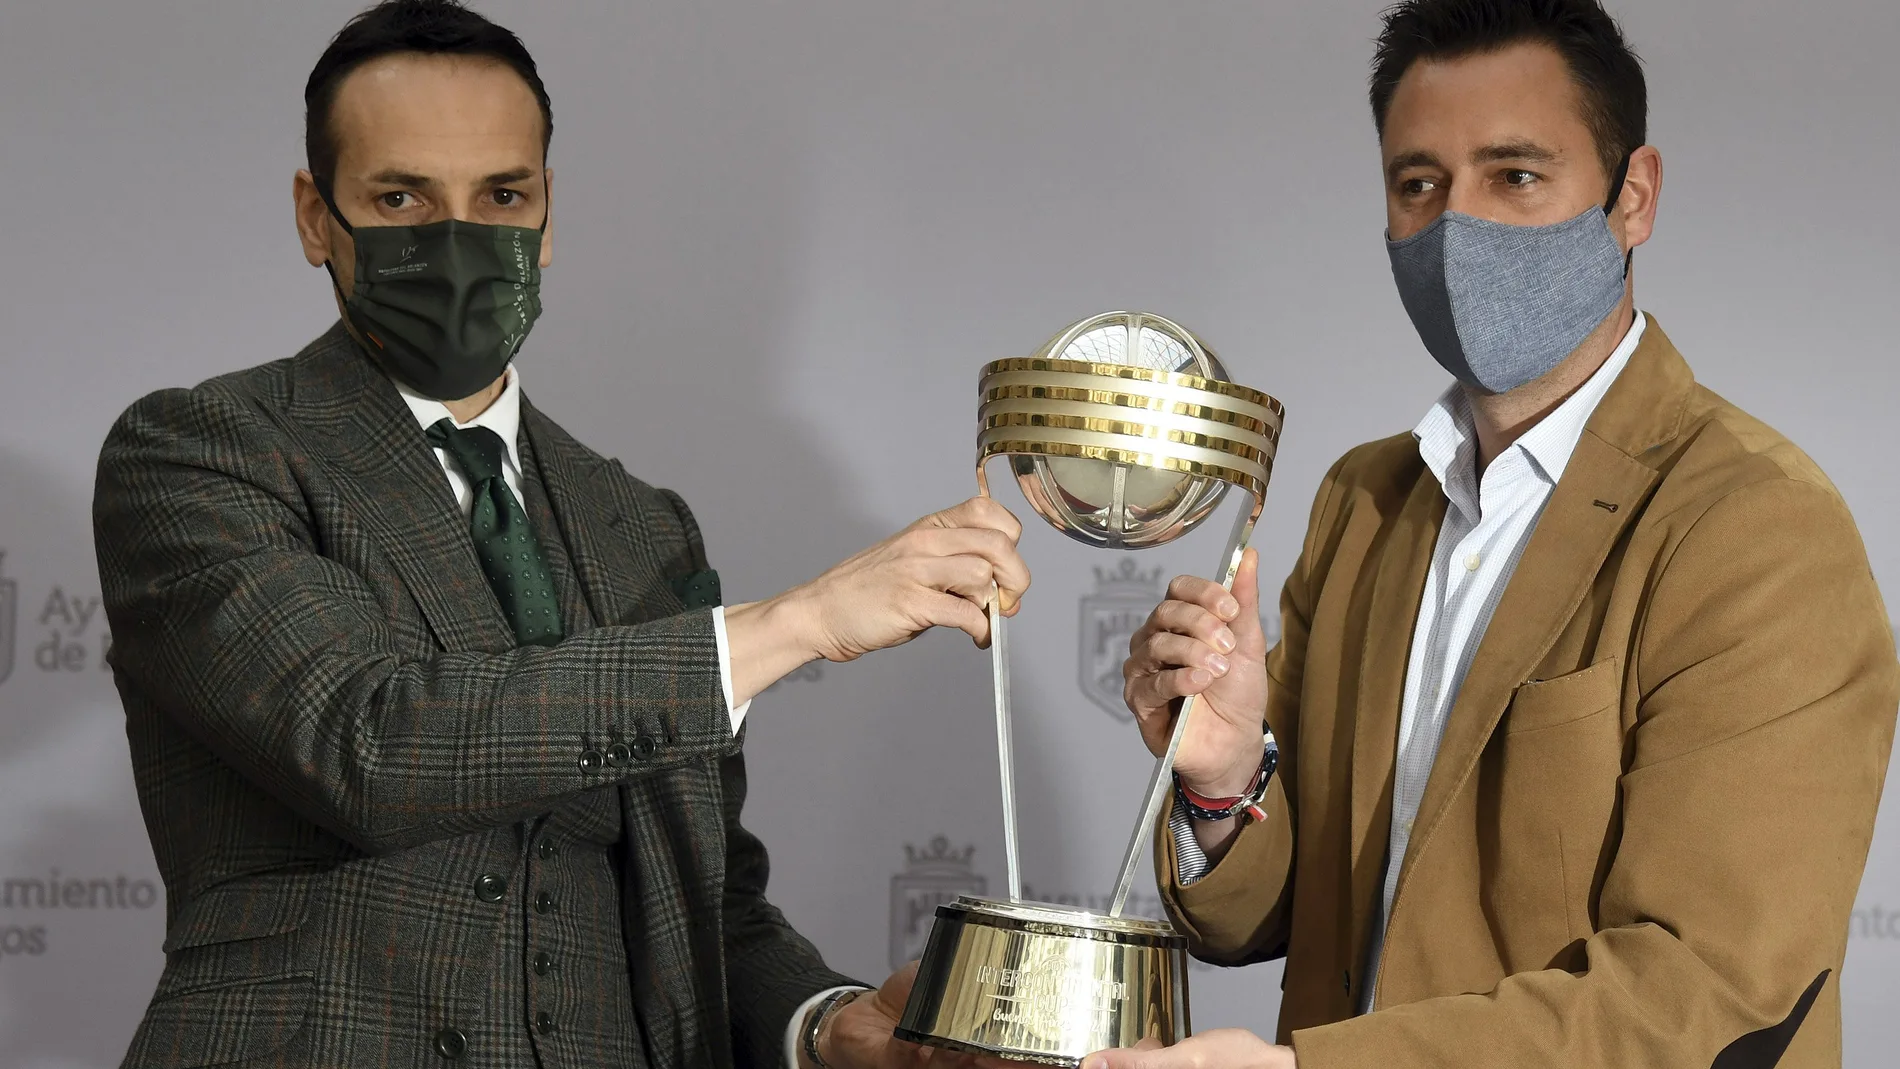 El alcalde de Burgos, Daniel de la Rosa, posa con el trofeo de campeón de la Copa Intercontinental de baloncesto junto a Félix Sancho, presidente del Hereda San Pablo